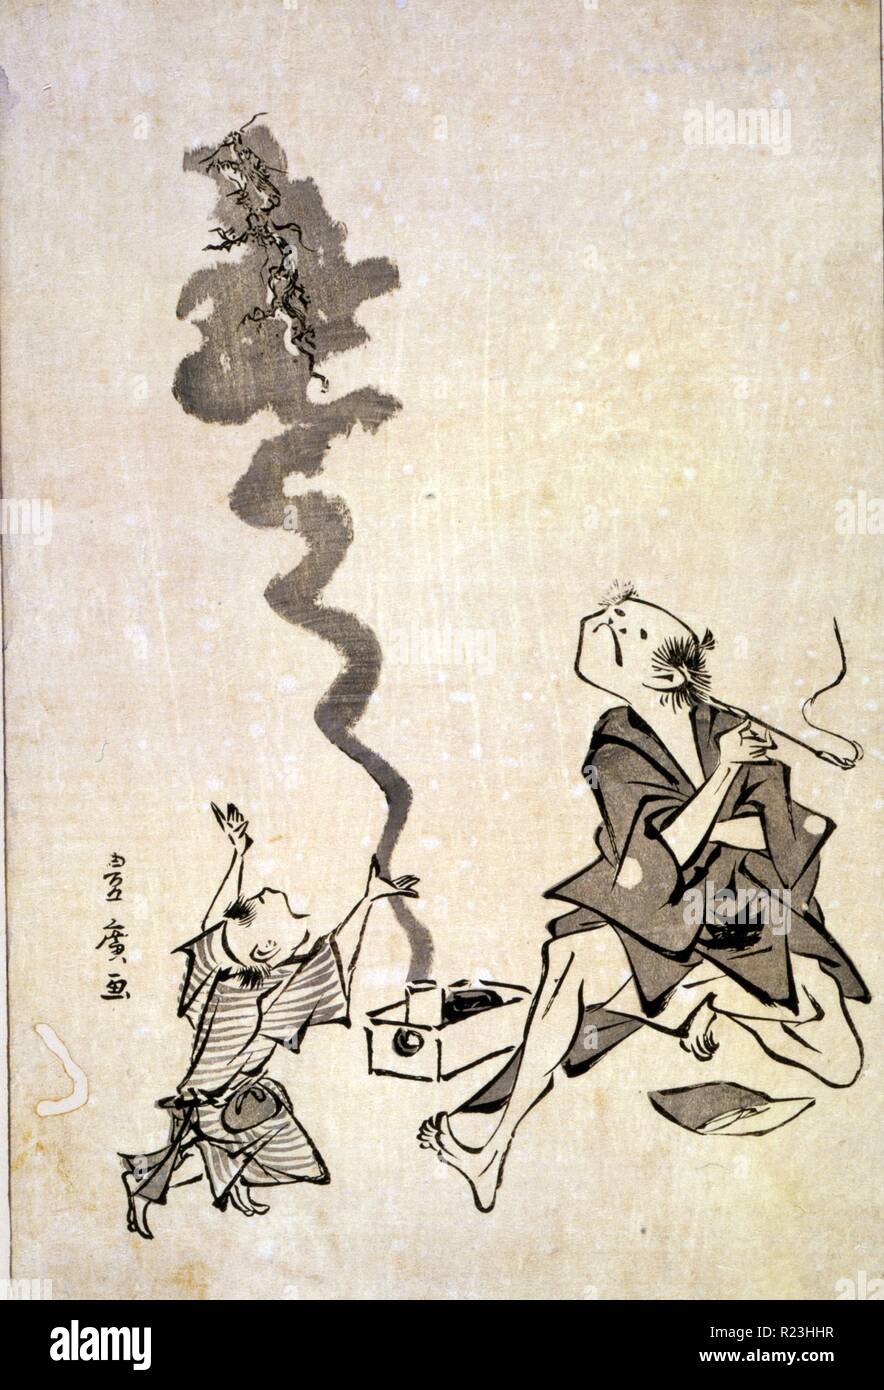 Tobae mitate ryugen sennin - Toba - e Korrespondenz einer Chinesischen sage. Drucken zeigt einen Mann Rauchen einer Zigarette in einem langen Halter, und ein Drache aufsteigend in einer Wolke von Rauch aus einer Box auf dem Boden neben ihm; ein Kind Gesten gegenüber den Drachen. Stockfoto